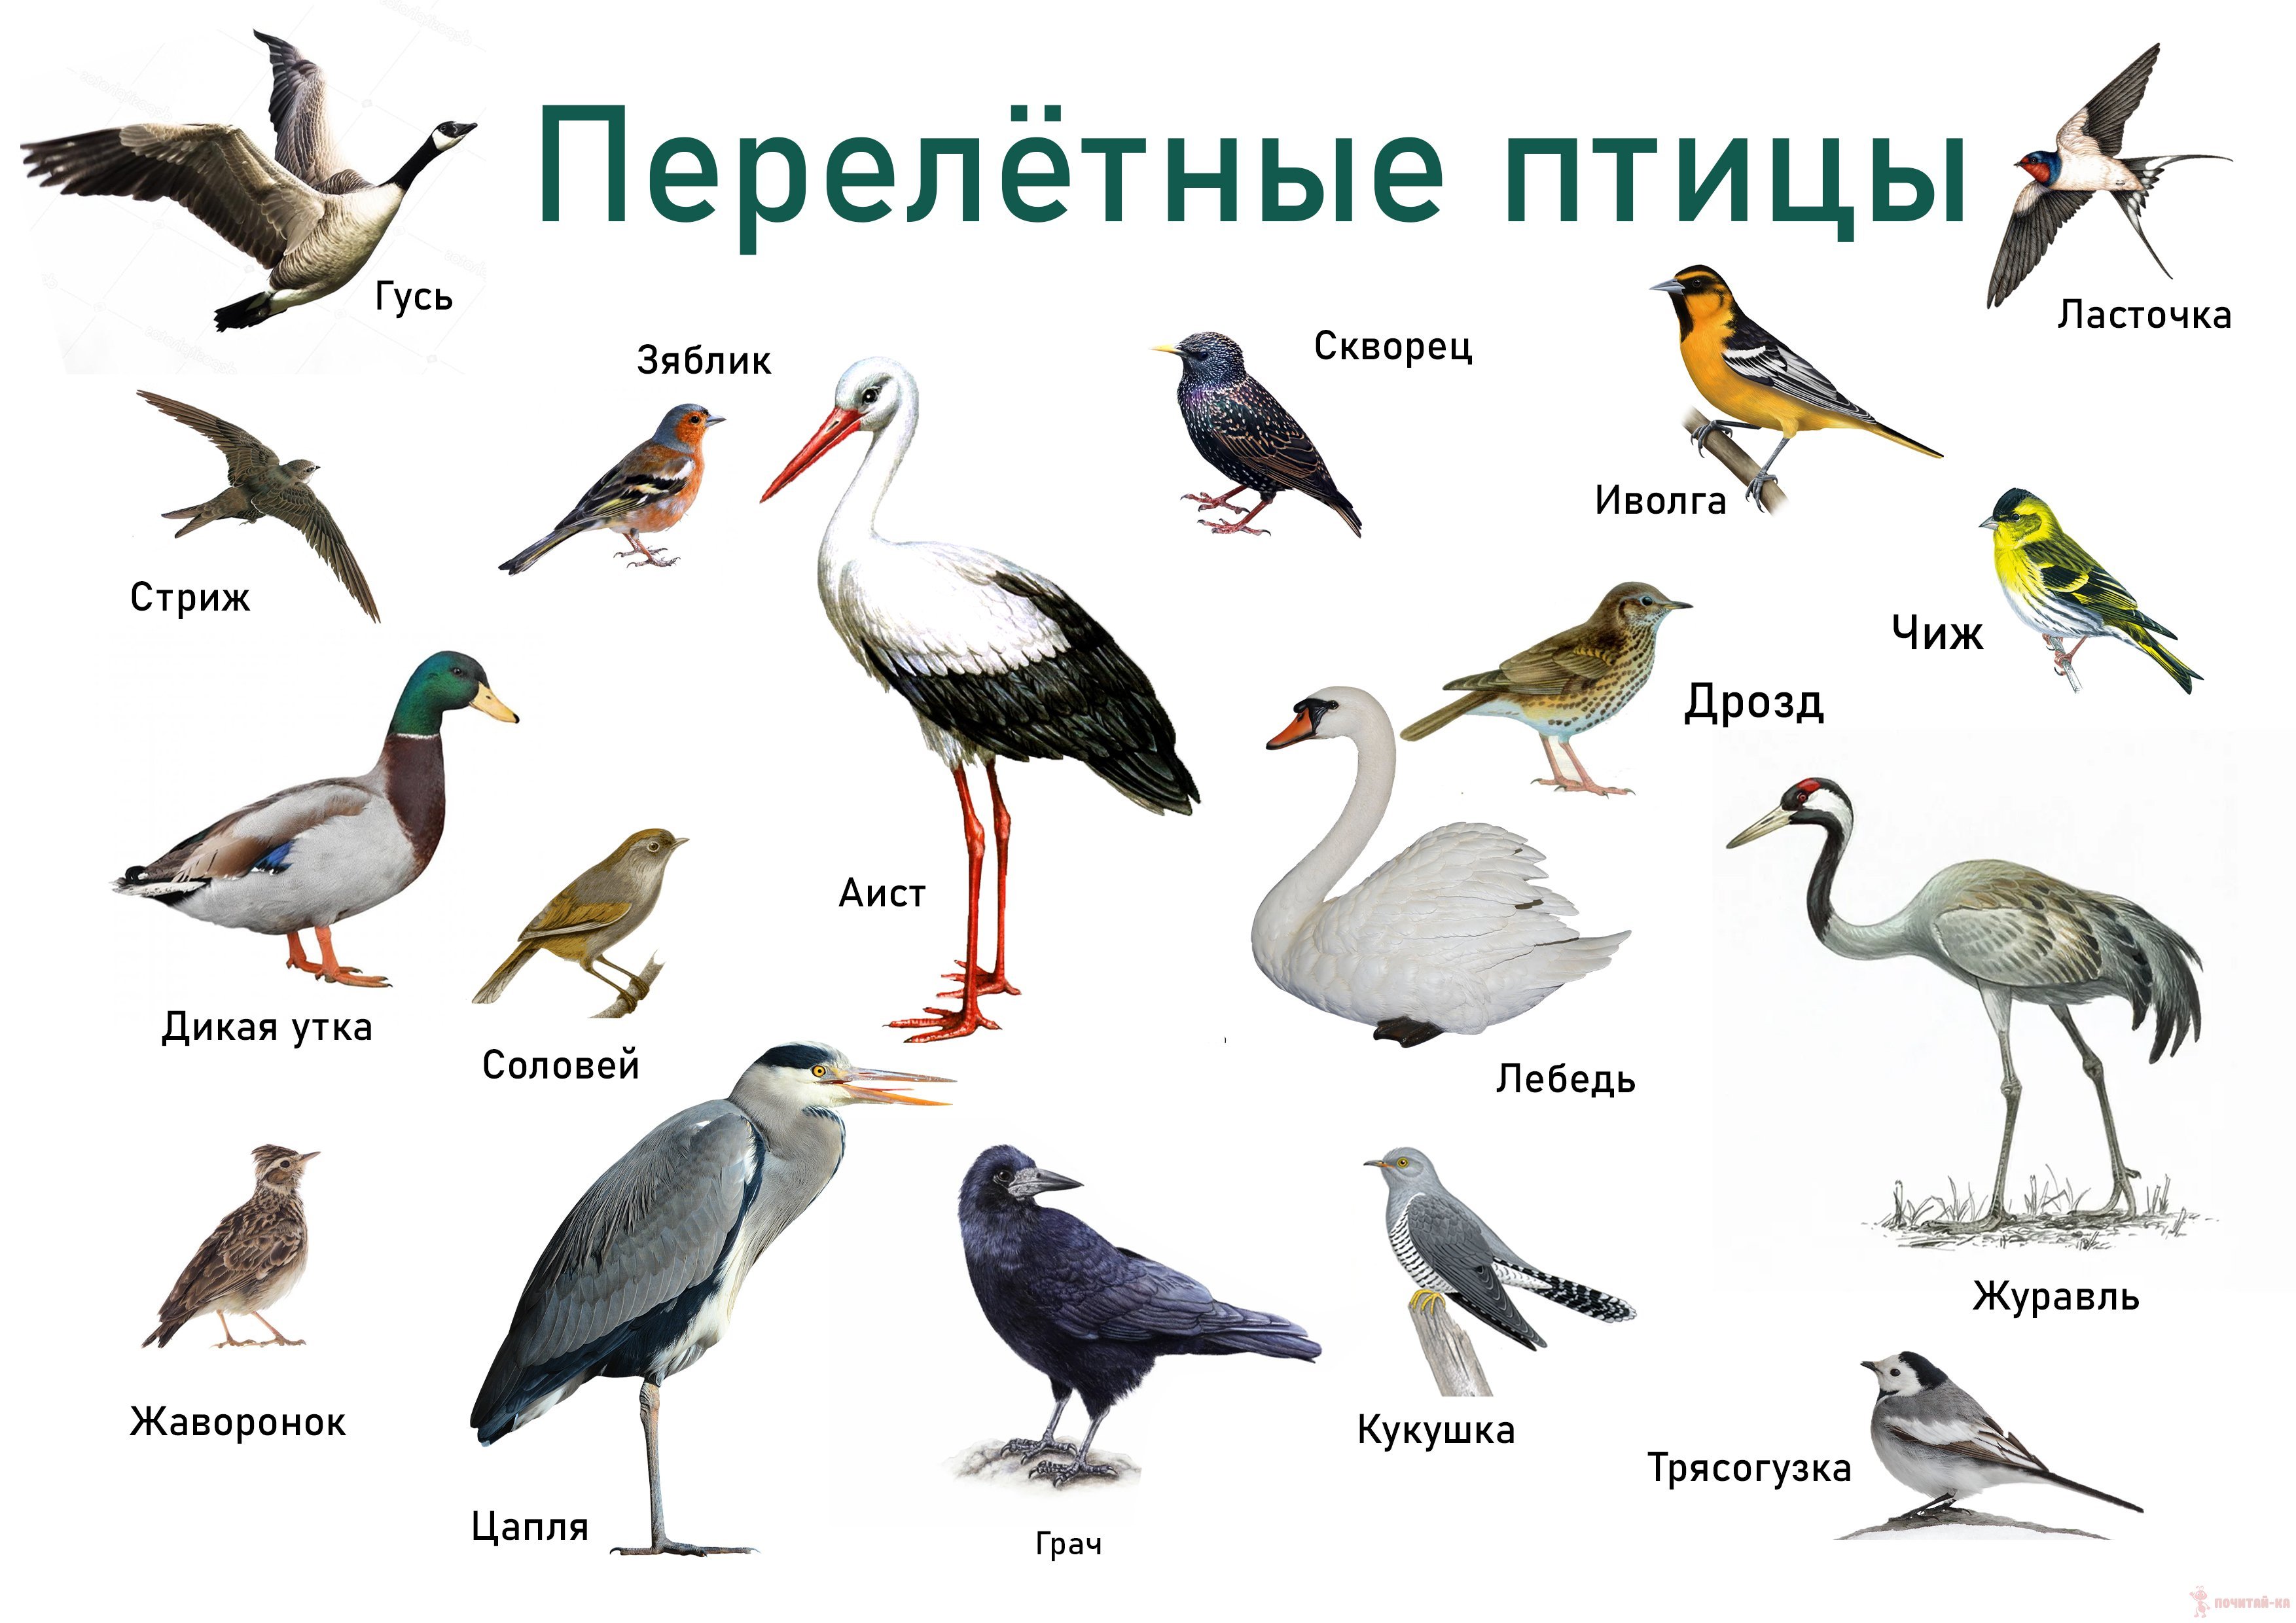 Определитель птиц онлайн